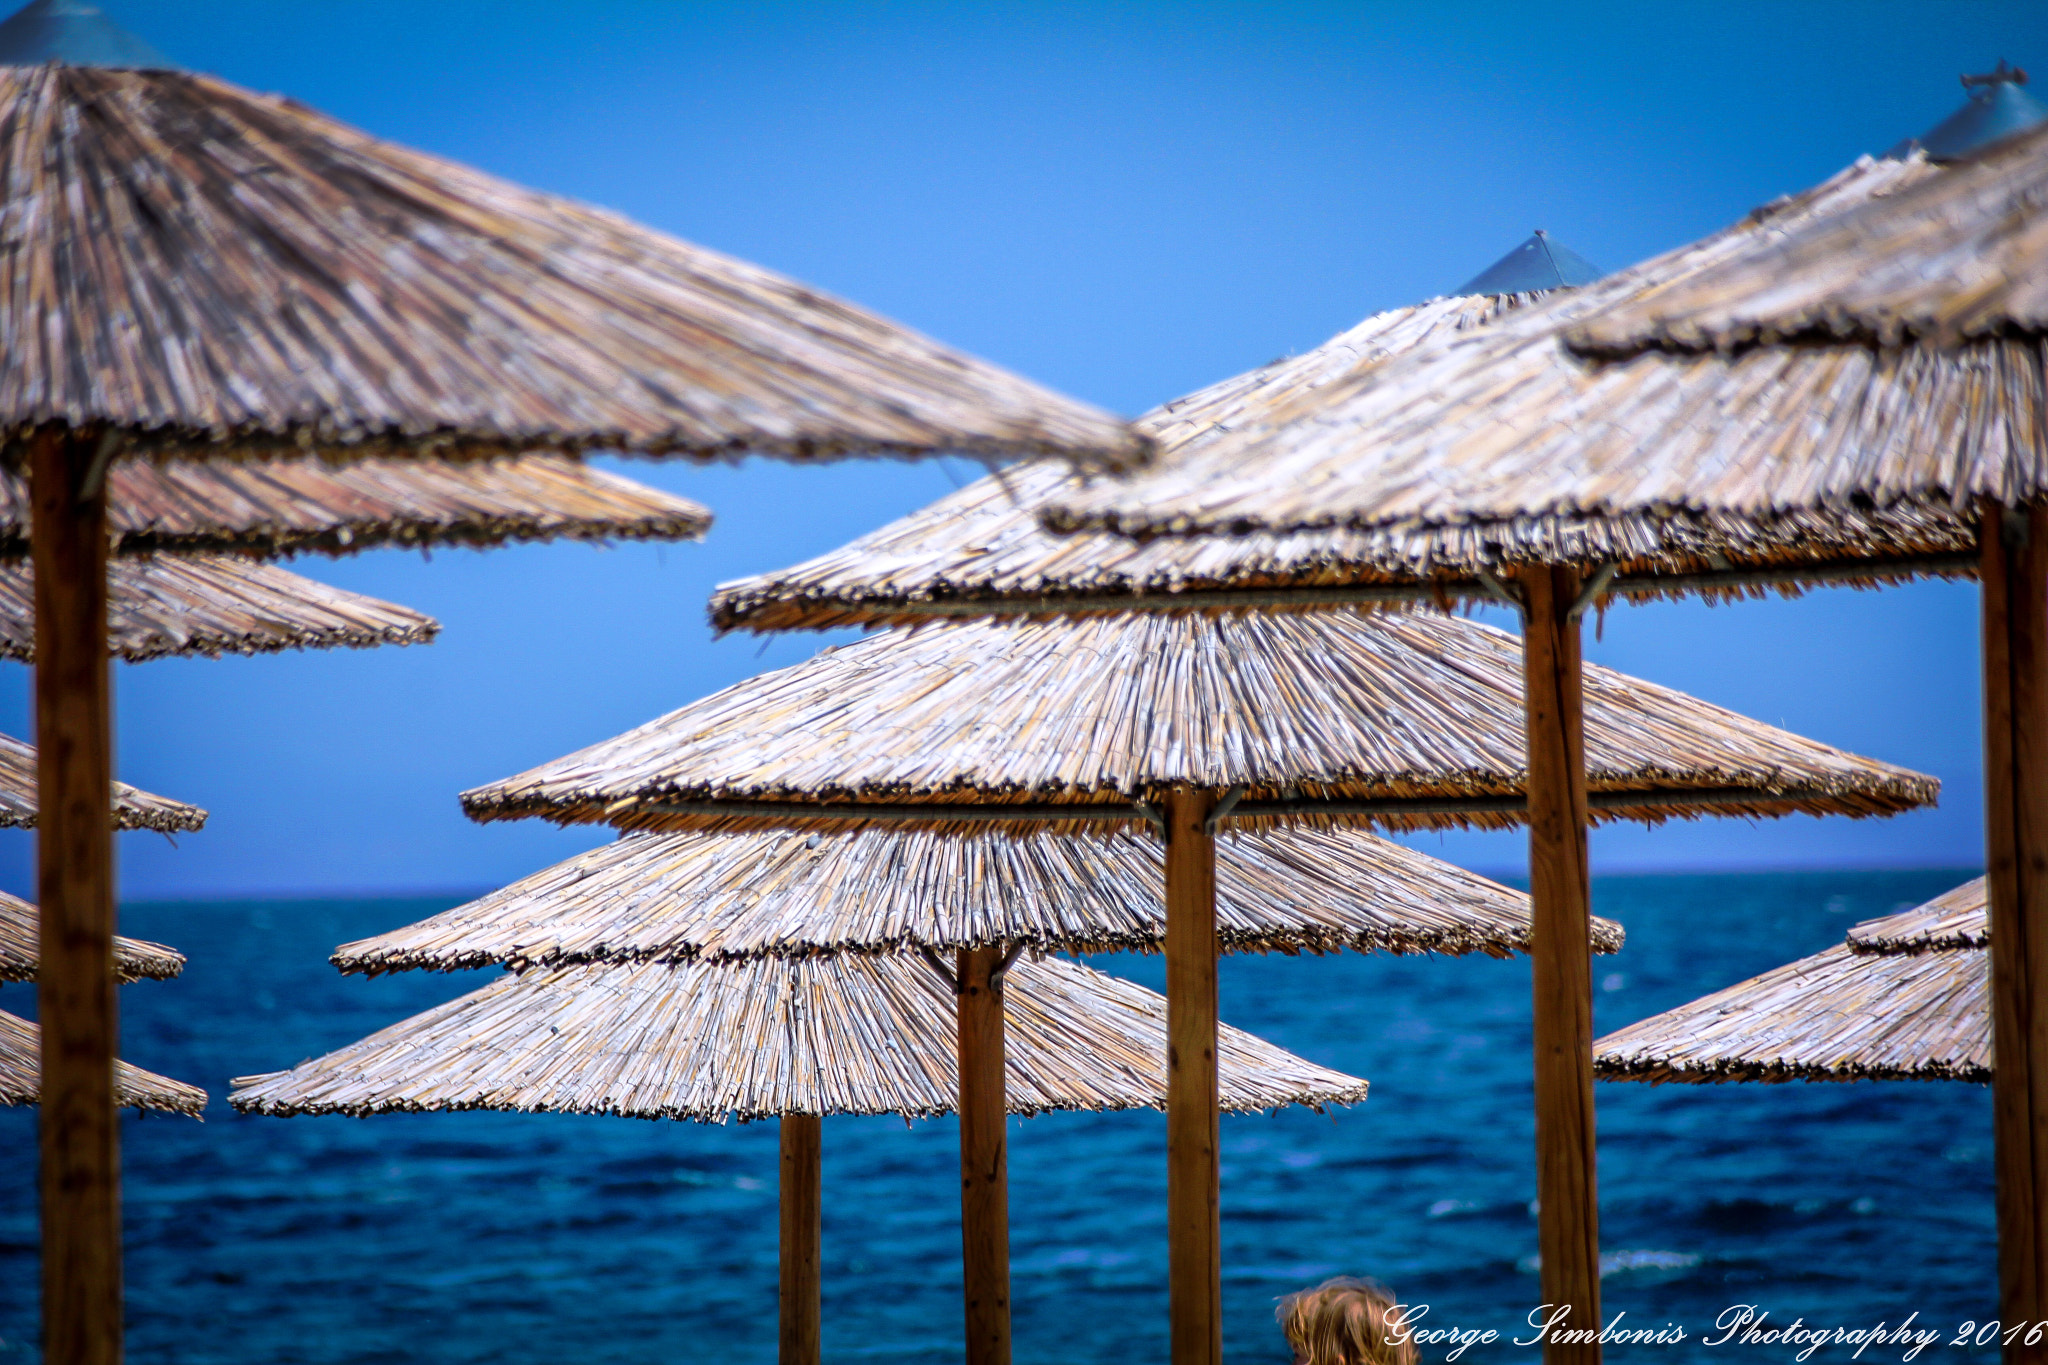 Canon EOS 60D sample photo. Astros beach in greece summer 2016 photography